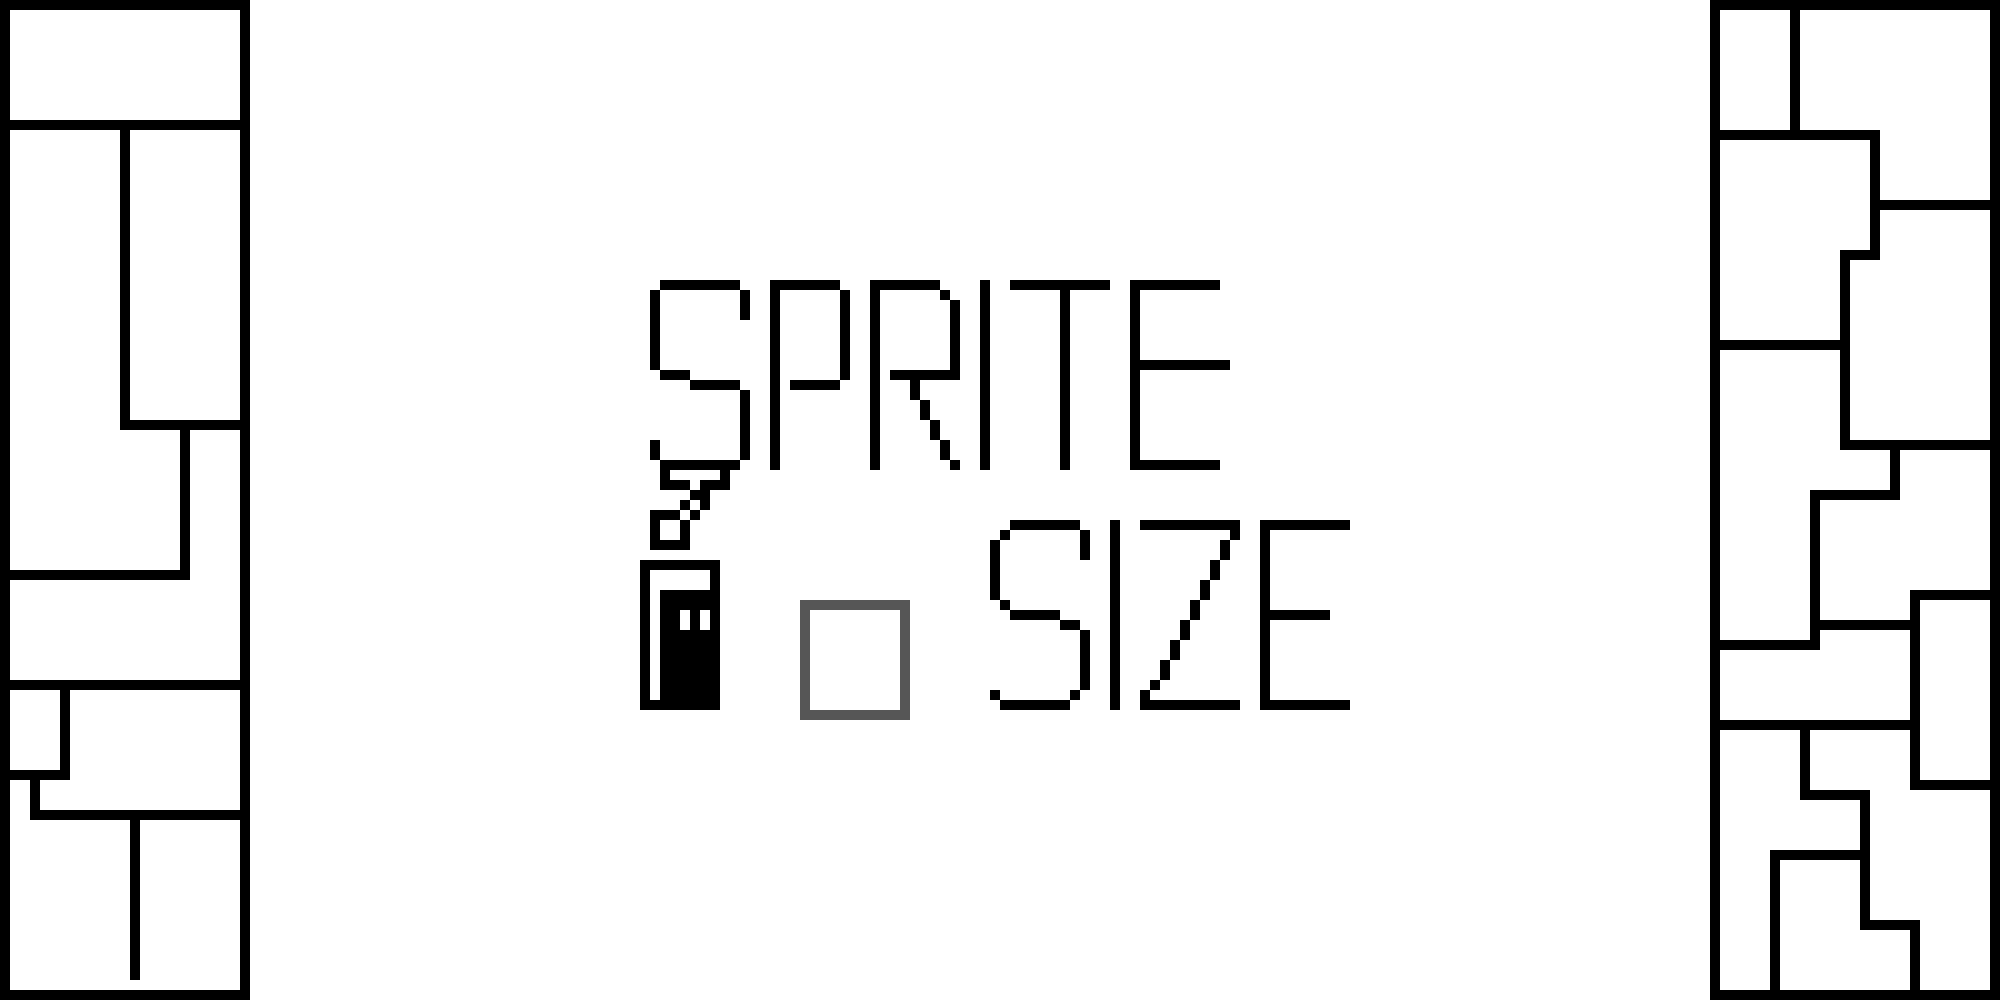 Sprite Size